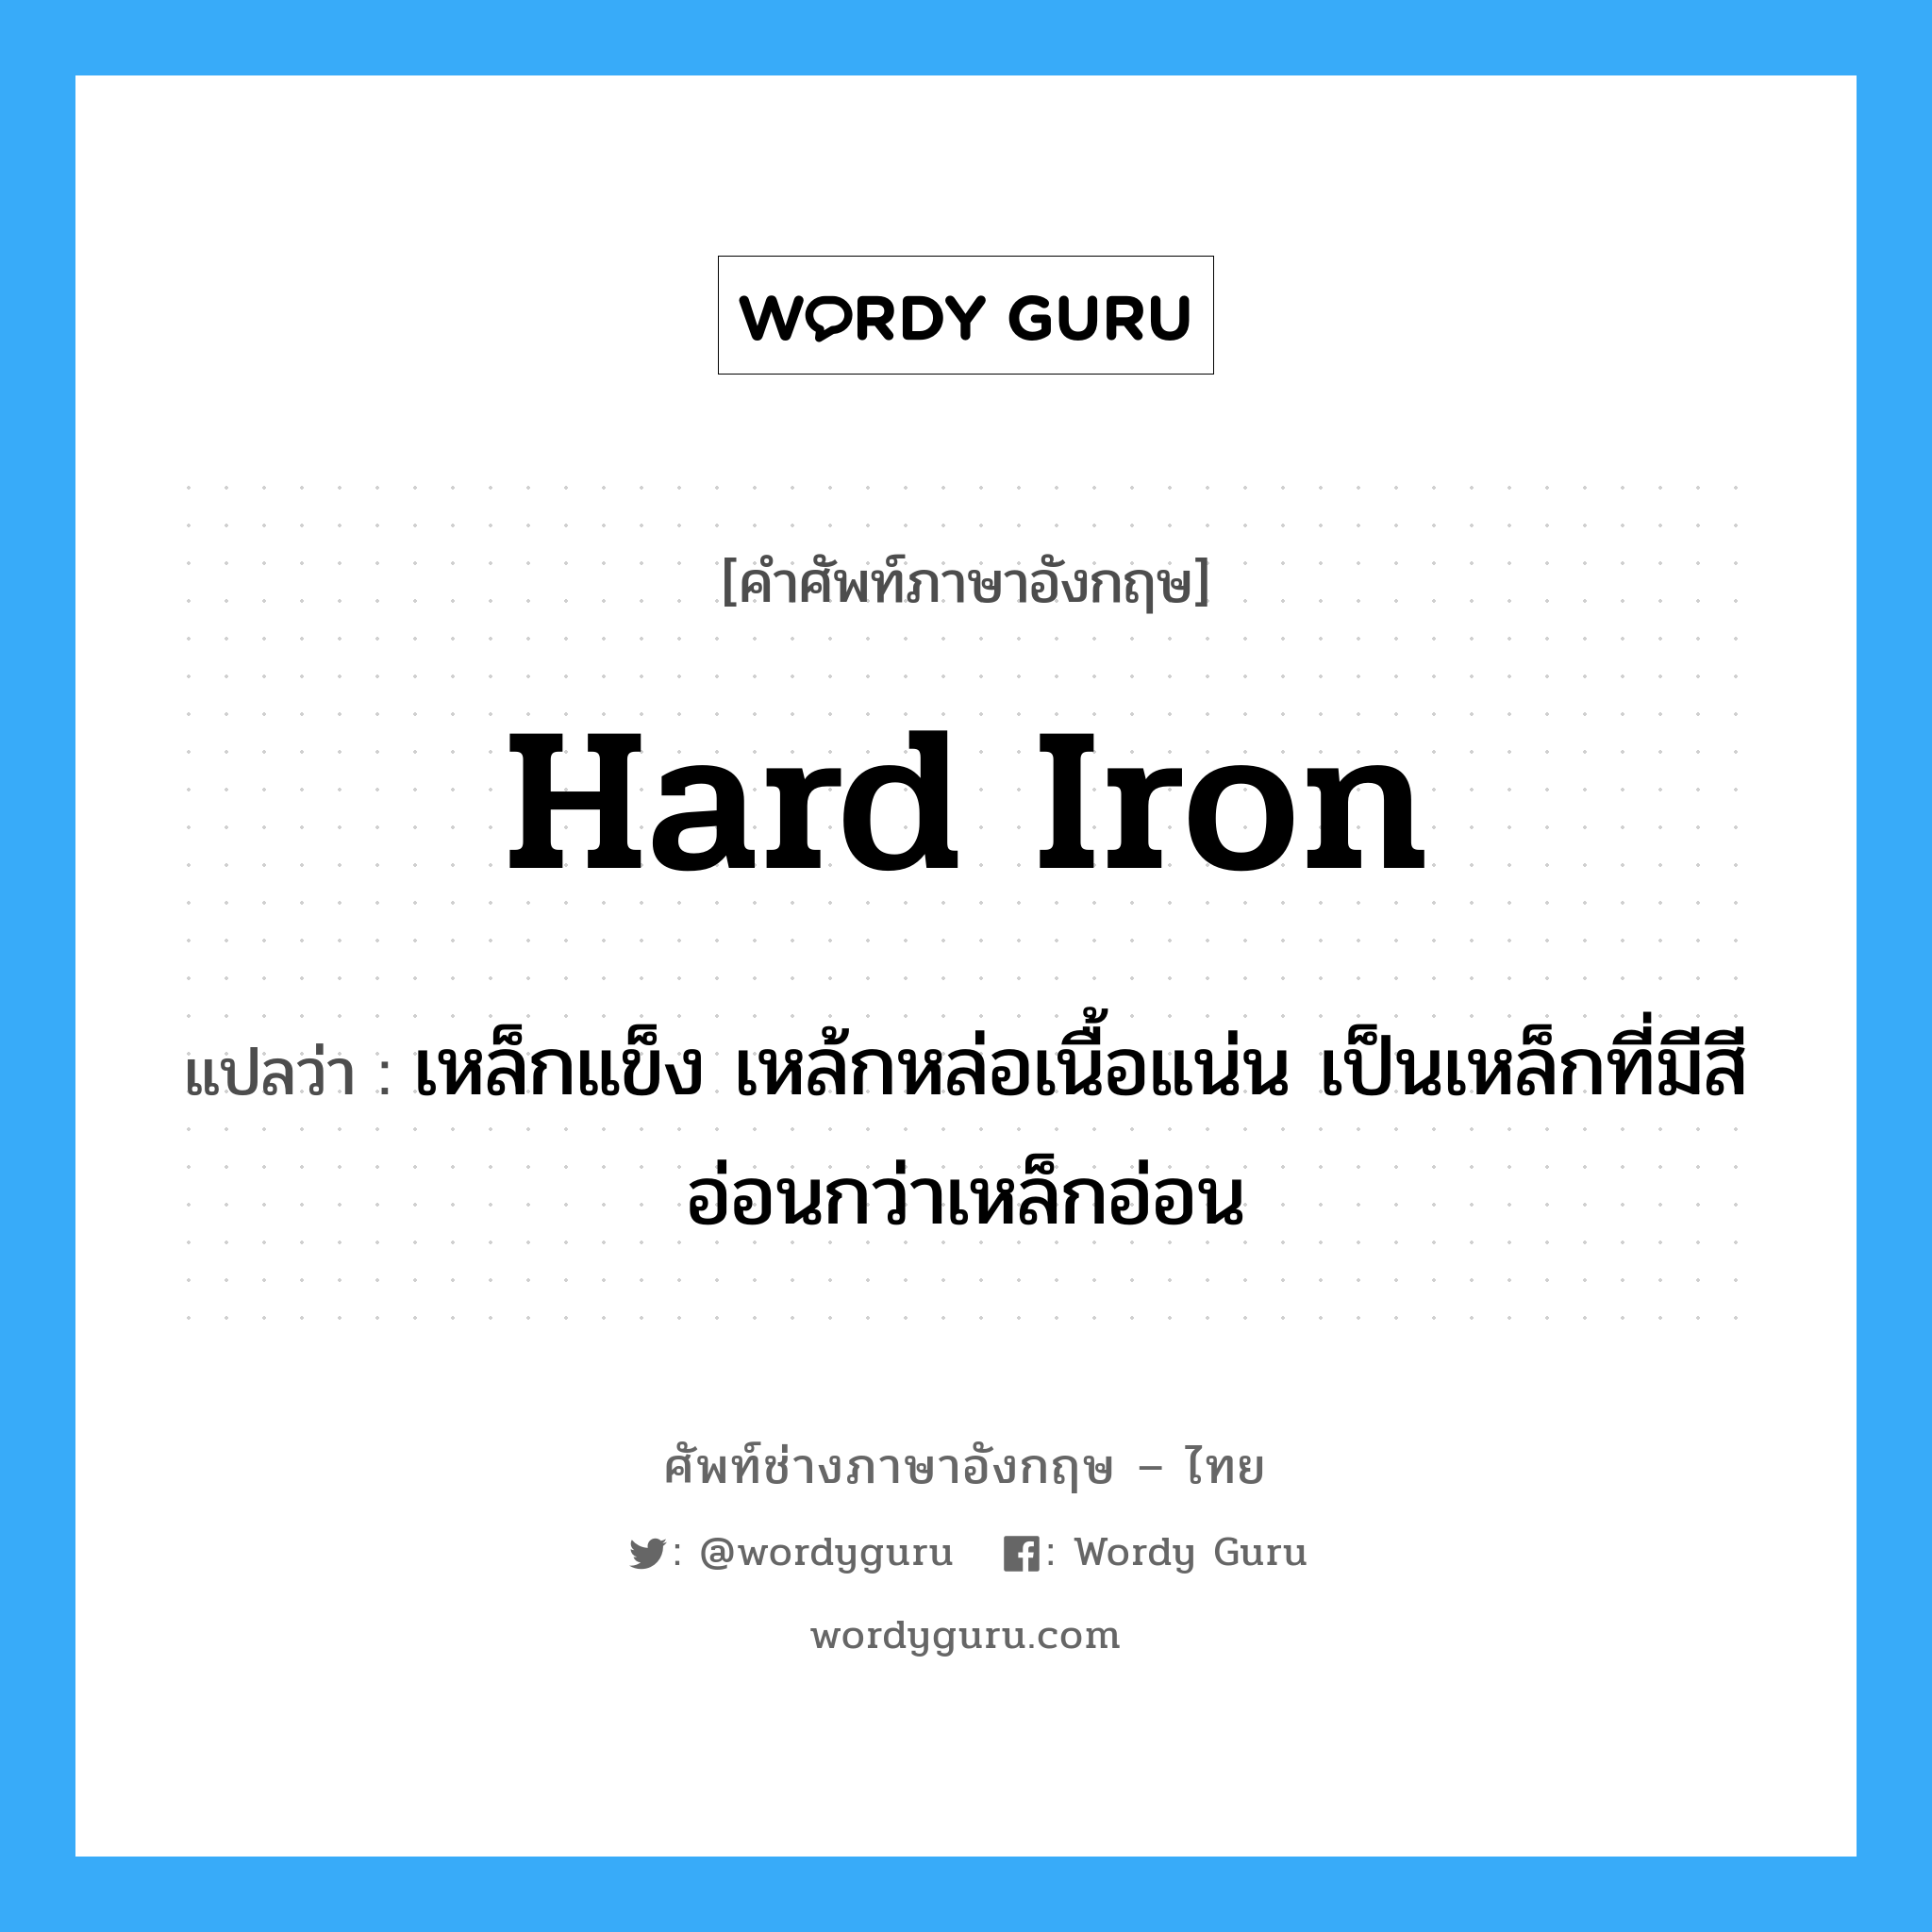 hard iron แปลว่า?, คำศัพท์ช่างภาษาอังกฤษ - ไทย hard iron คำศัพท์ภาษาอังกฤษ hard iron แปลว่า เหล็กแข็ง เหล้กหล่อเนื้อแน่น เป็นเหล็กที่มีสีอ่อนกว่าเหล็กอ่อน